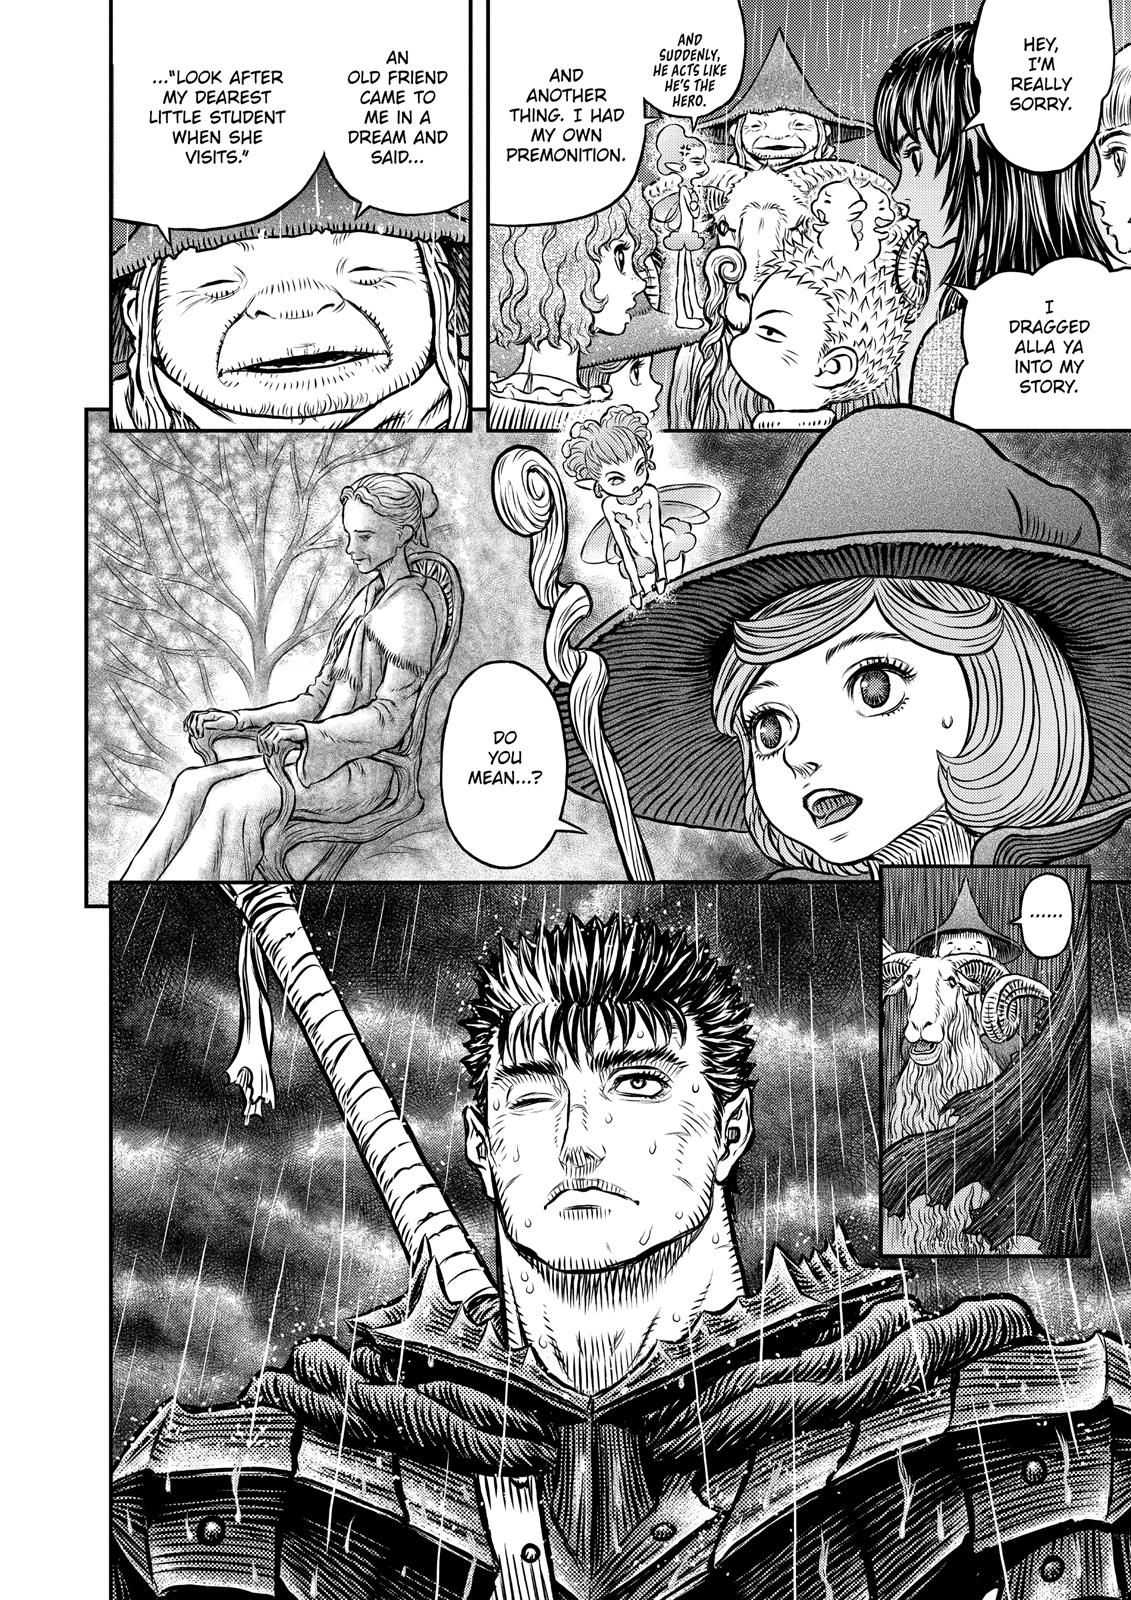 Berserk Manga Chapter 344 image 09